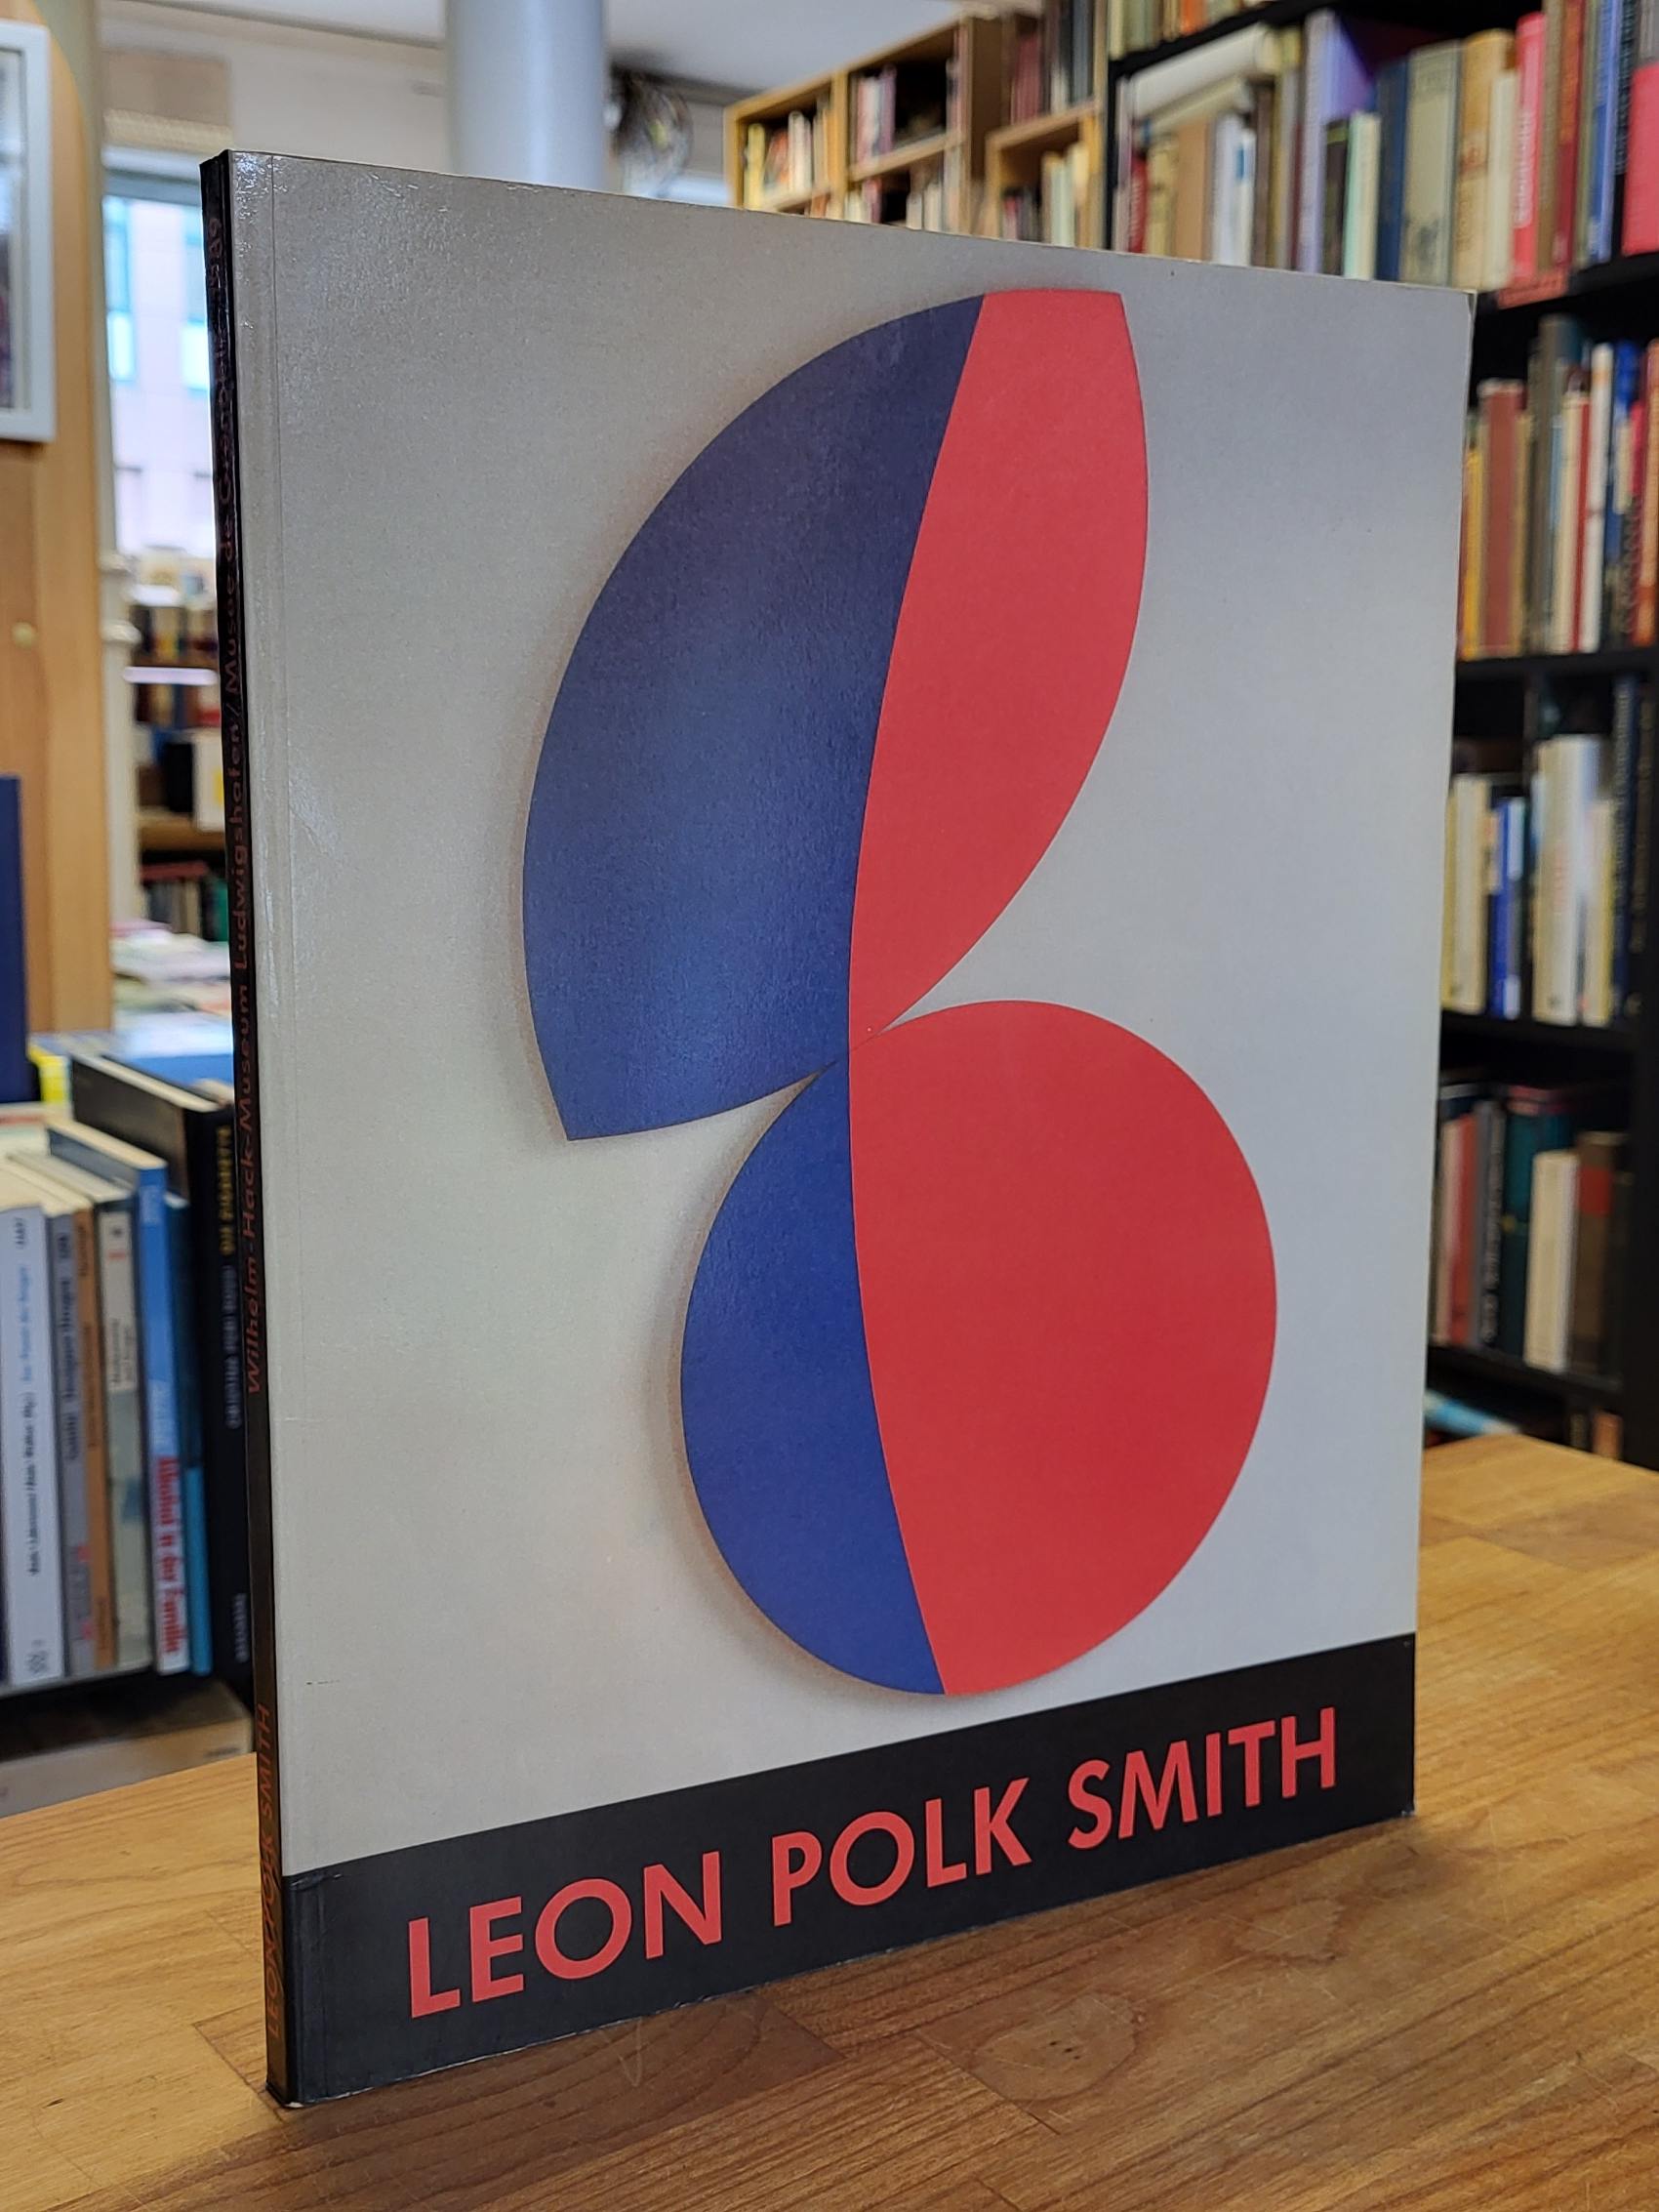 Polk Smith, Leon Polk Smith.